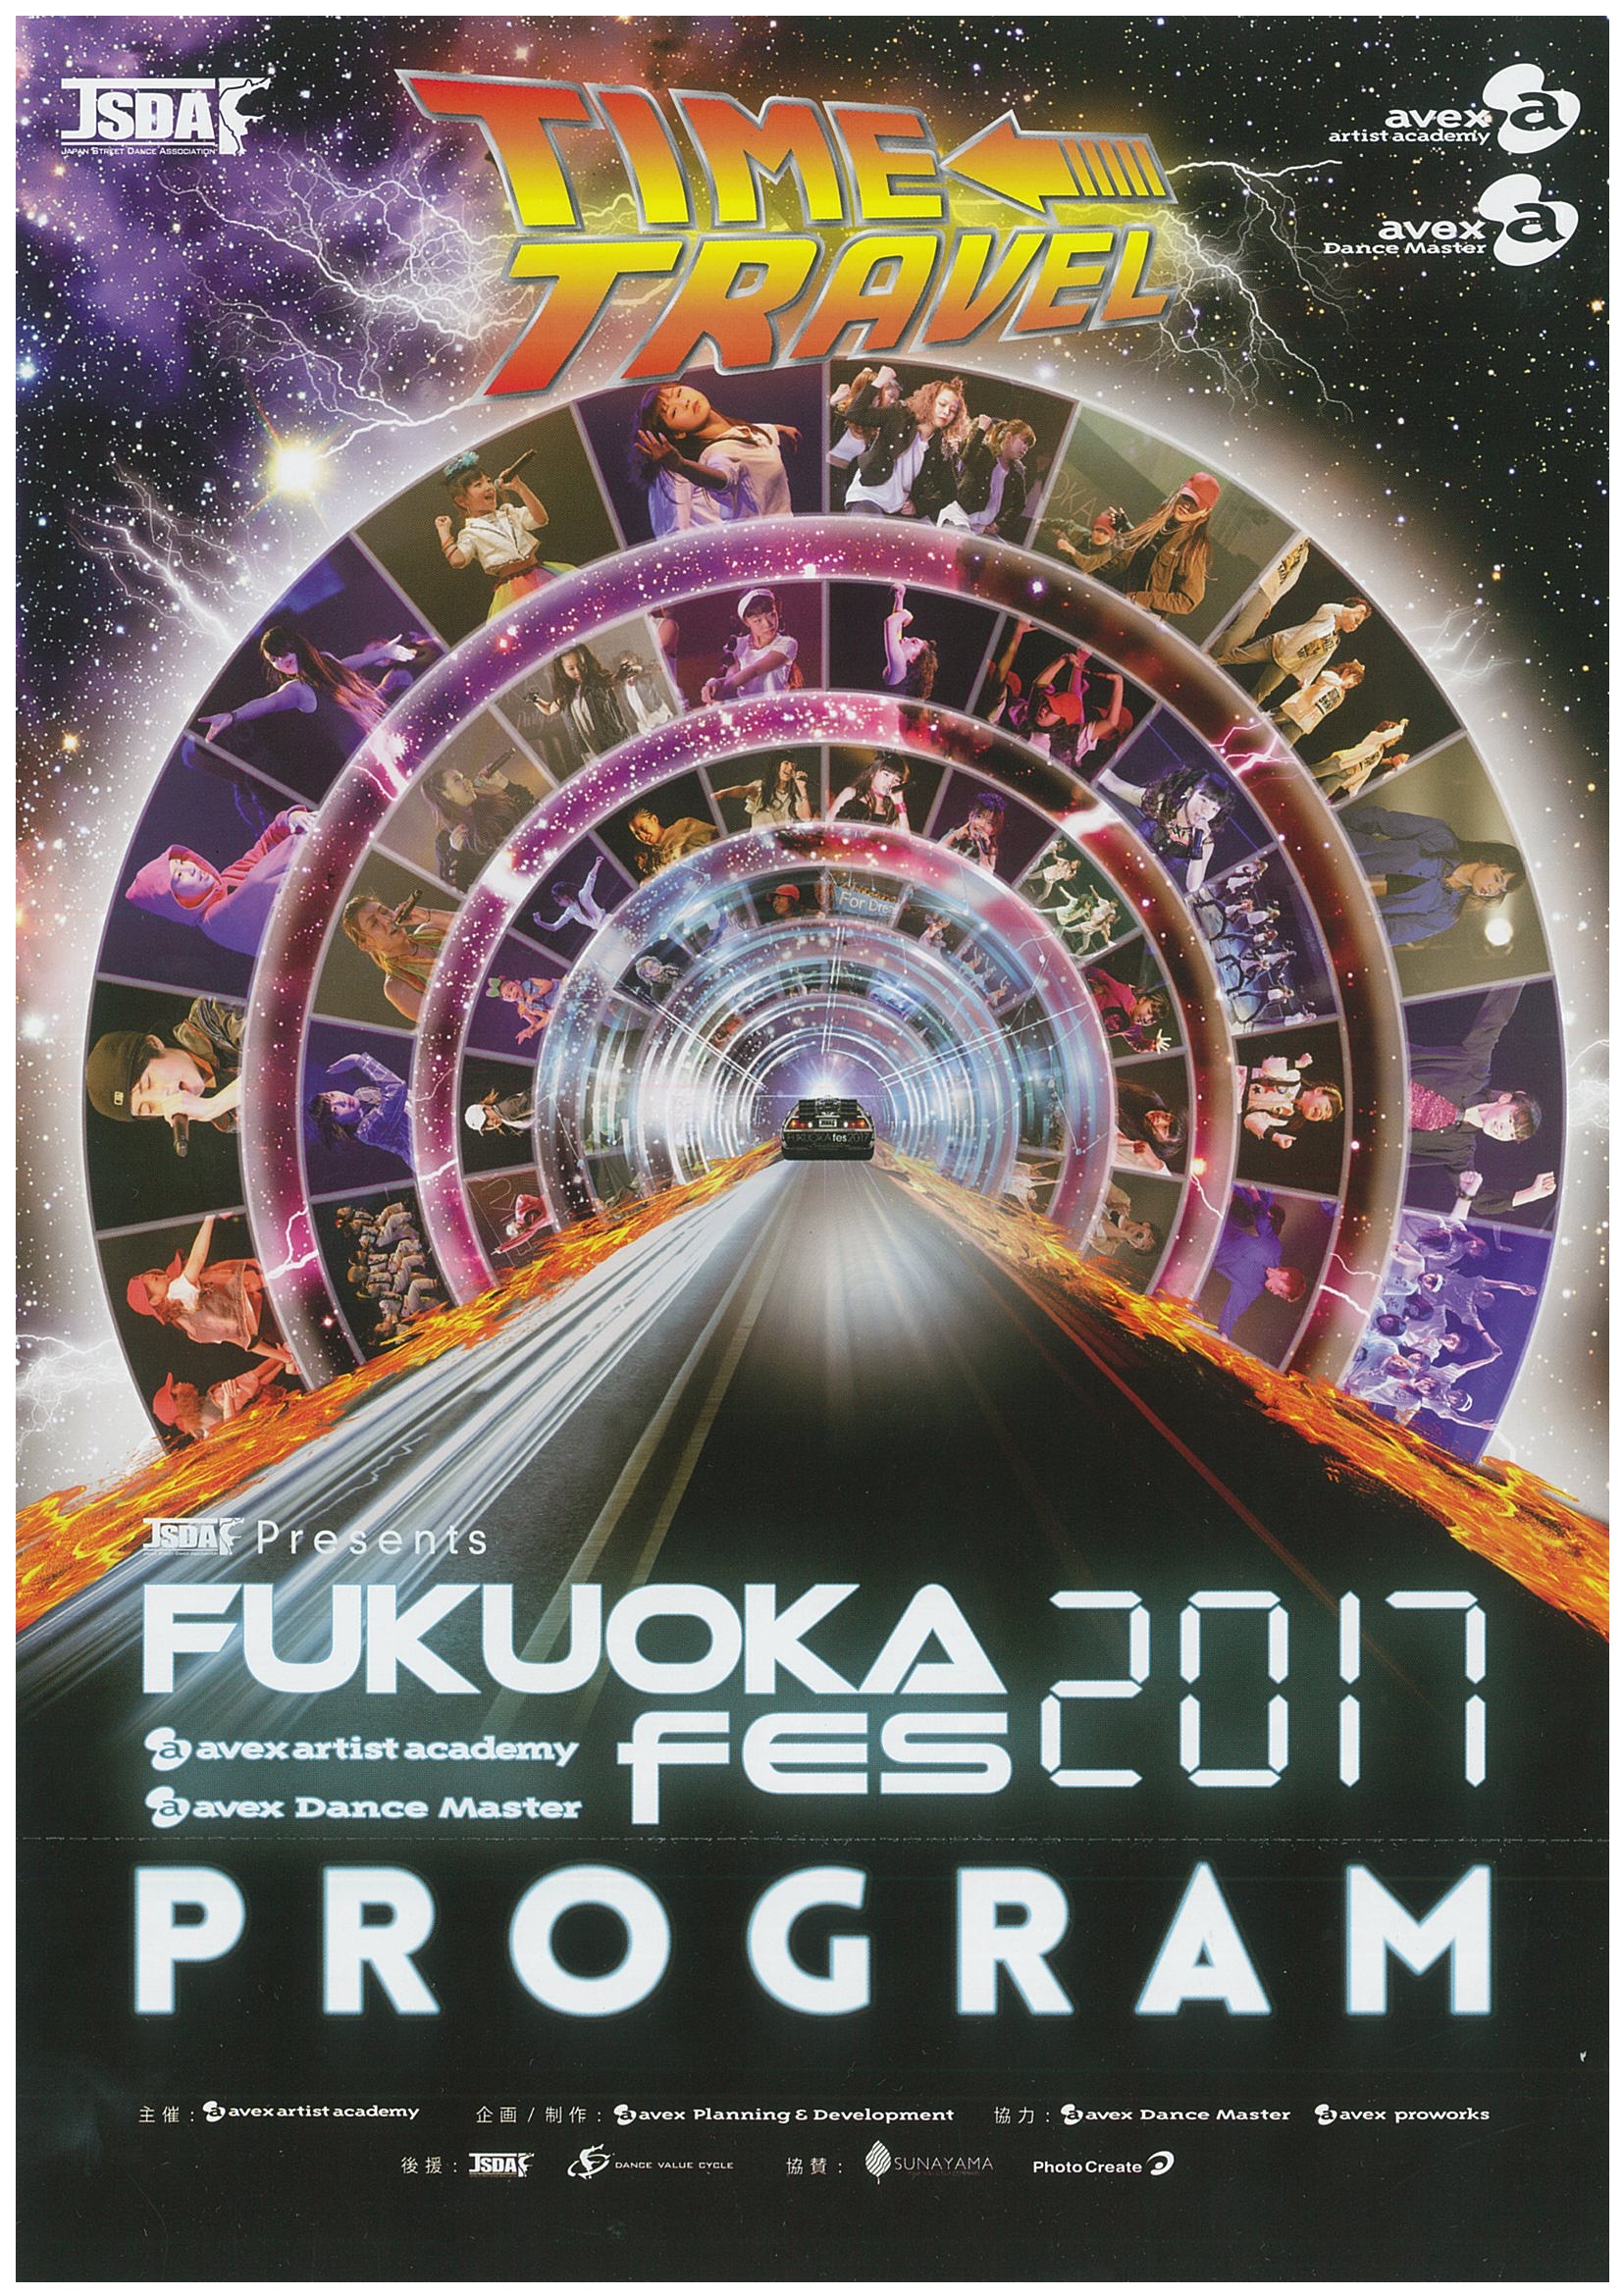 FUKUOKA fes 2017